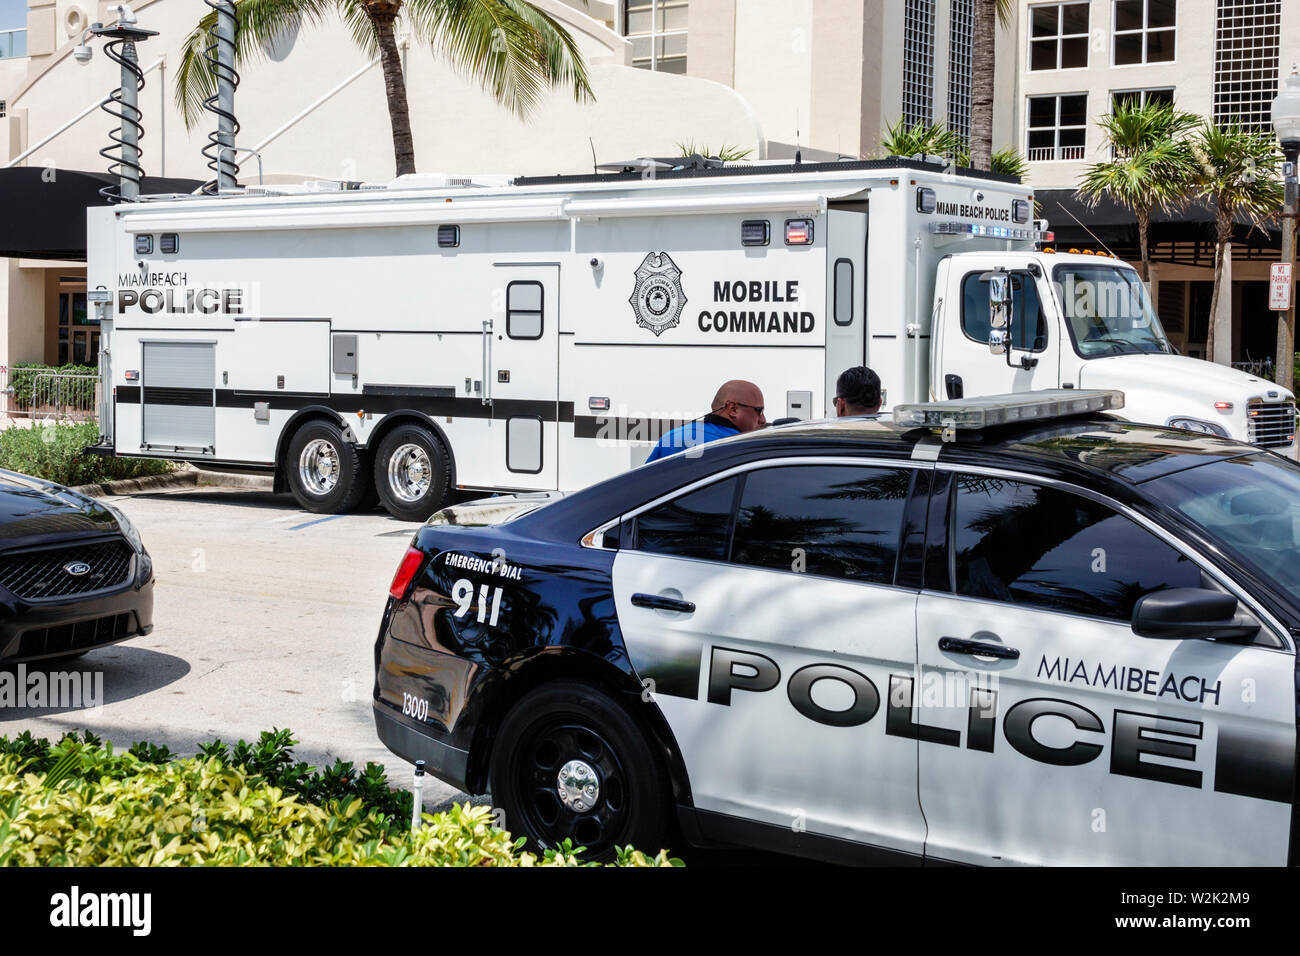 Miami Beach Florida, North Beach, Feuer auf dem vierten Festival 4. Juli jährliche Polizeipräsenz, Autos, Mobile Command Vehicle, FL190704029 Stockfoto